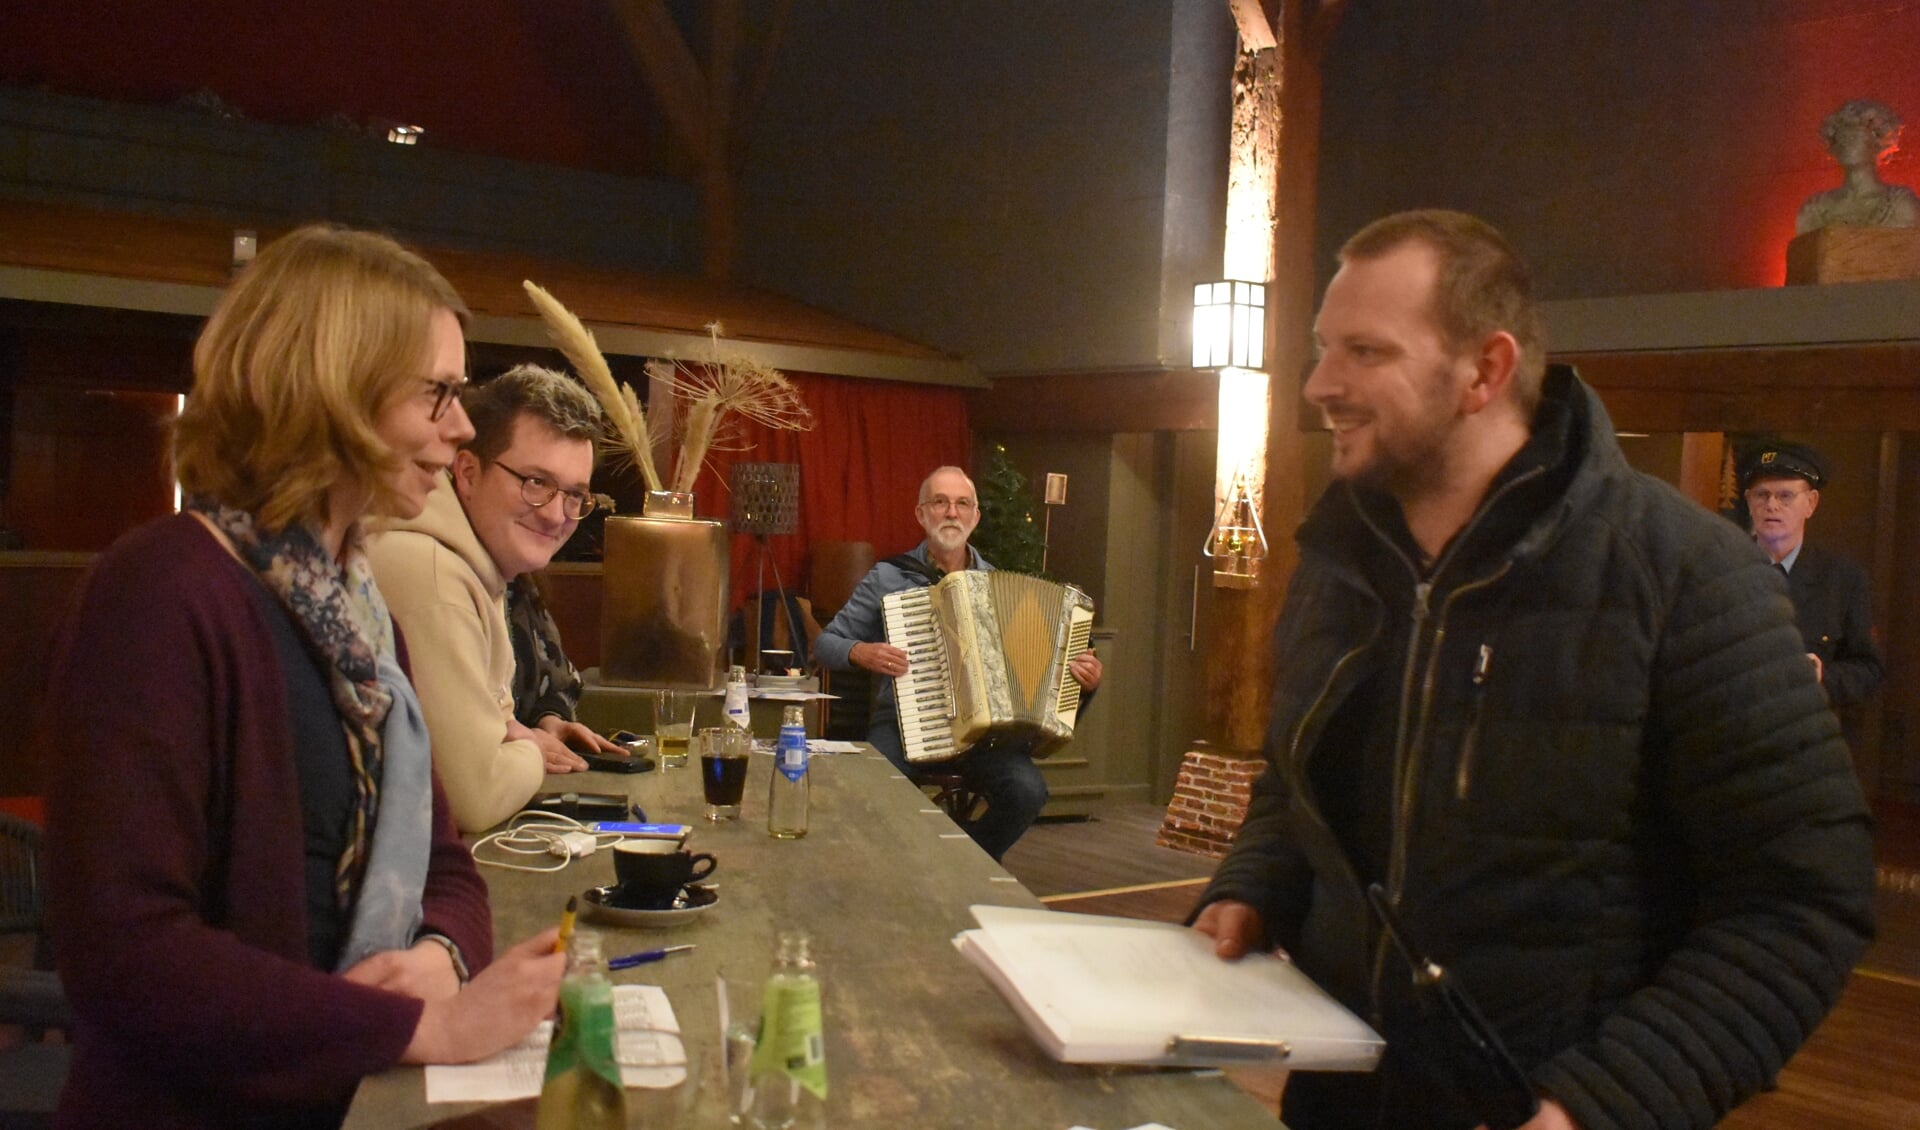 De laatste 'groepsvertegenwoordiger' (rechts voor) haalt het opdrachtenboek af in De Pleats. Muzikant Keimpe van der Meer speelt nog even een deuntje.